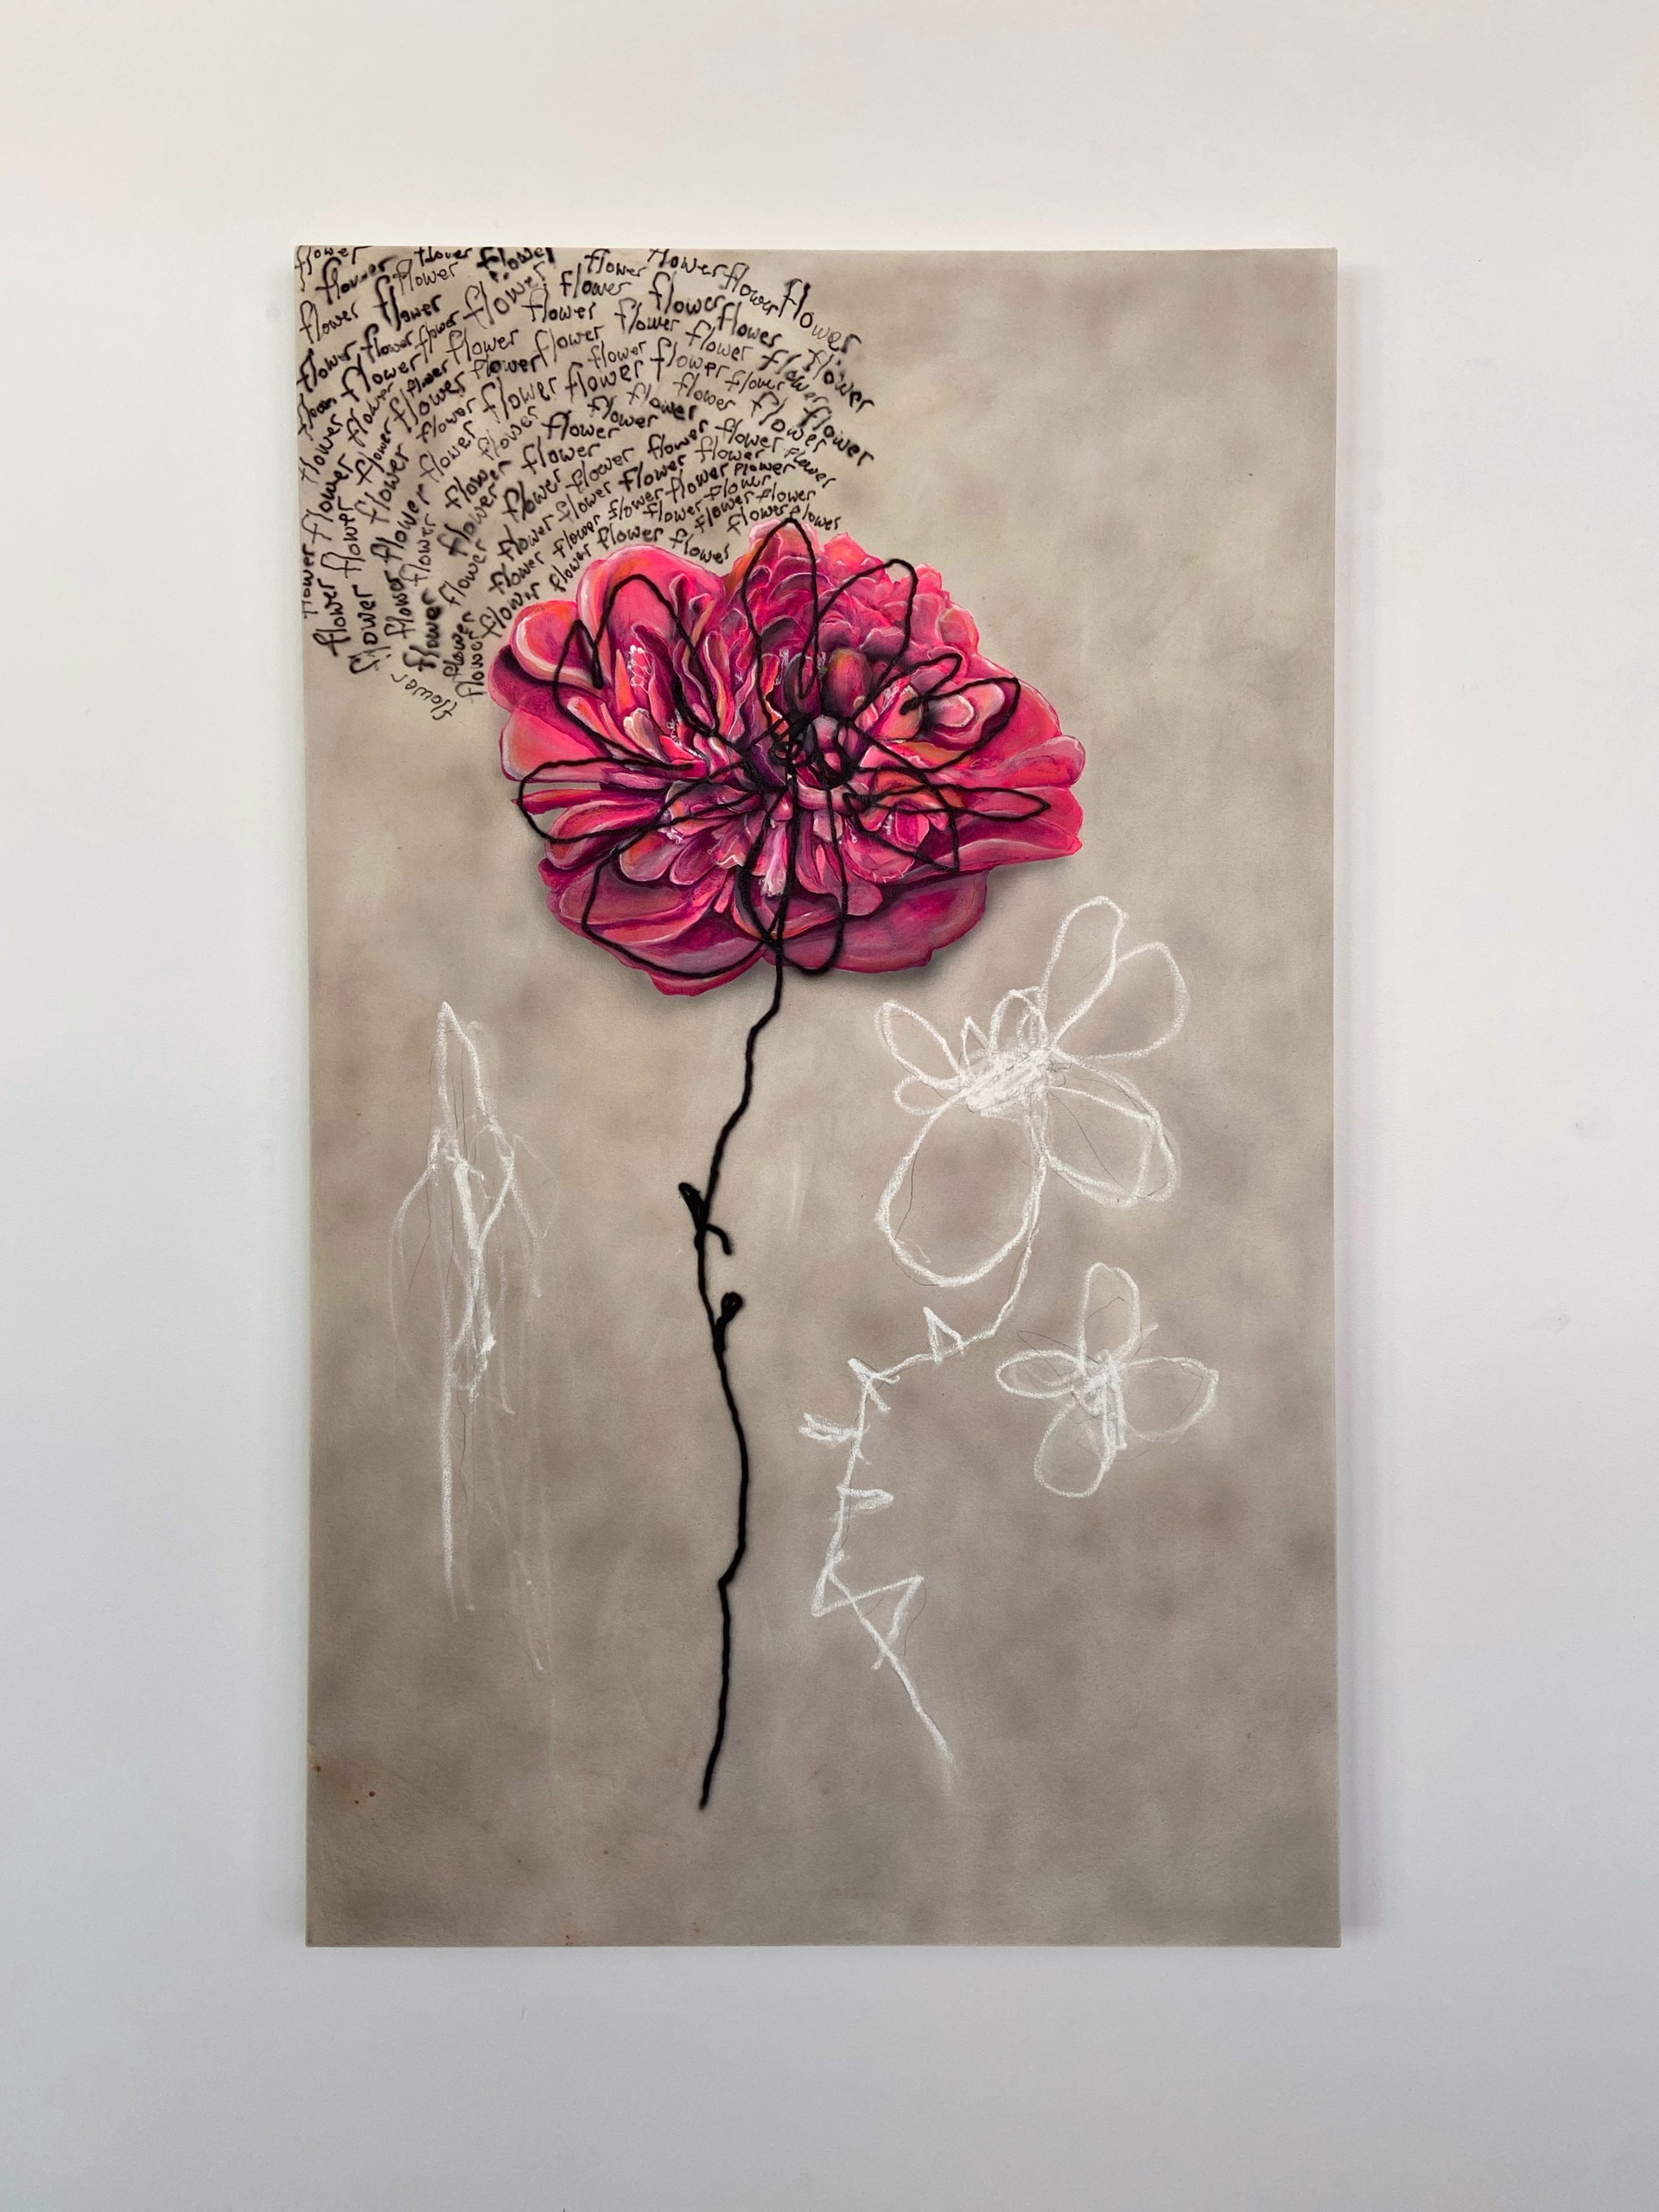 Flowers on Flowers by Matthew Tripodi